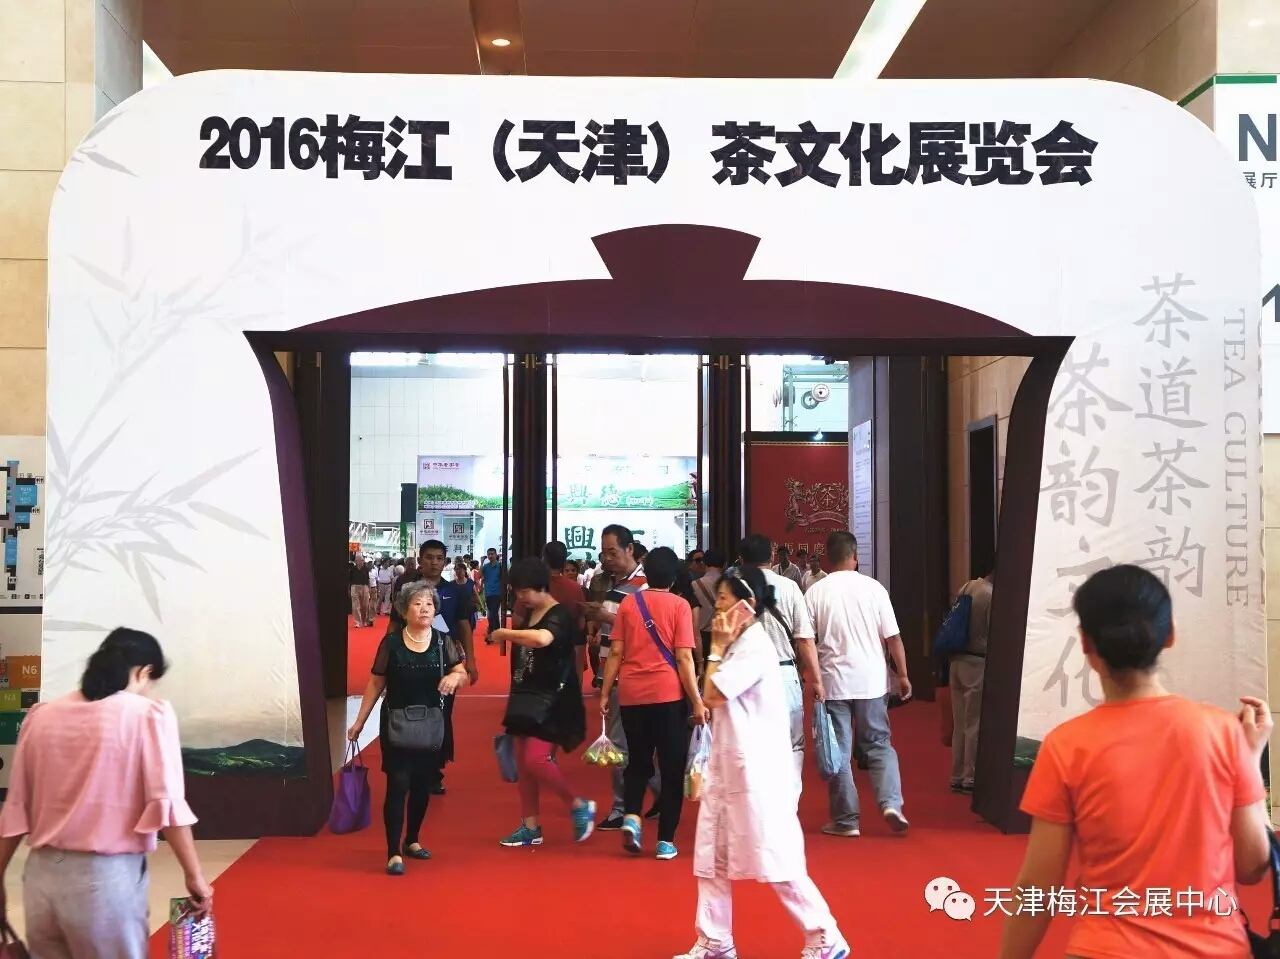 2017梅江(天津)茶文化展览会暨紫砂、工艺收藏品、红木家具展